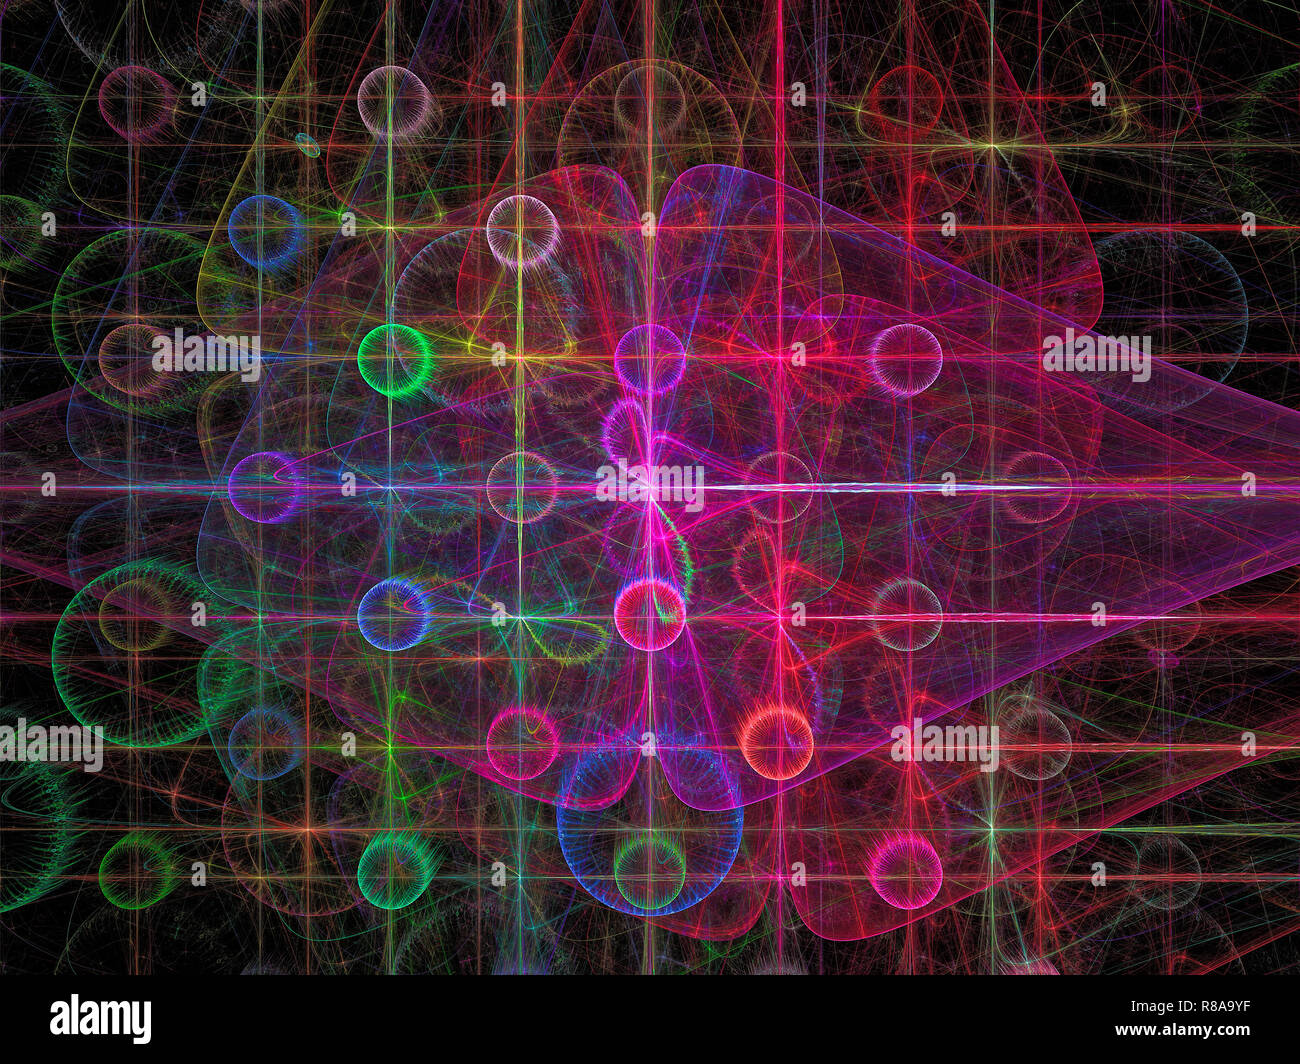 Résumé motif violet avec des cercles lumineux et grille - image générée par ordinateur. Art fractal pour papier peint de bureau, web design, couvre. Banque D'Images